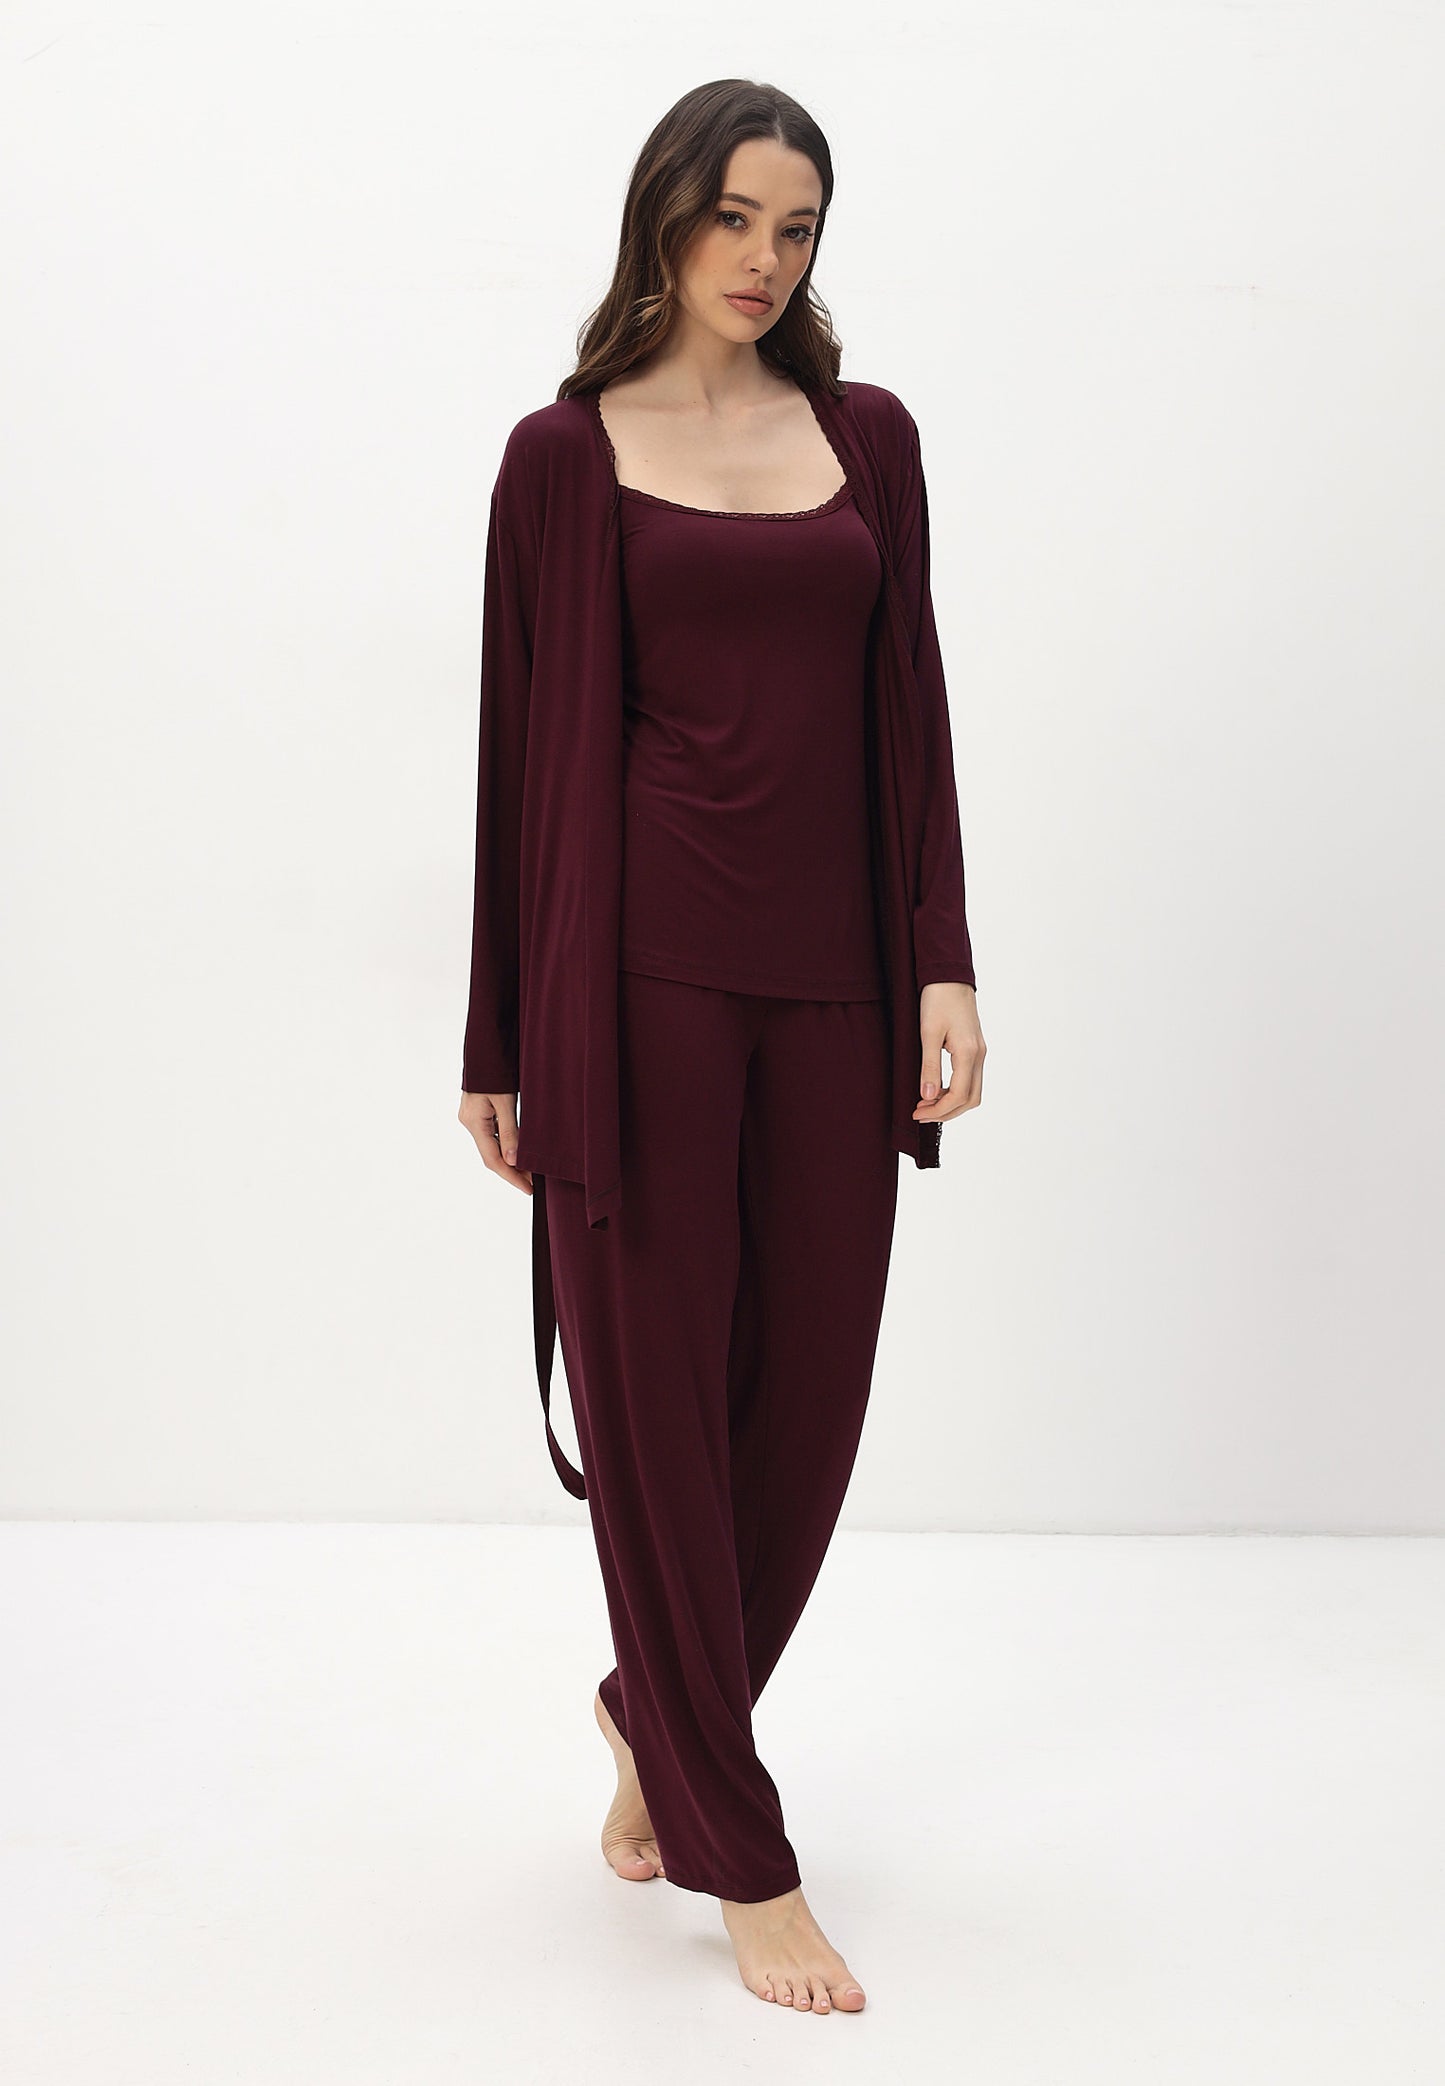 Damen Pyjama Set mit Morgenmantel aus Bambus viskose LMS-6176 Redwine Weinrot